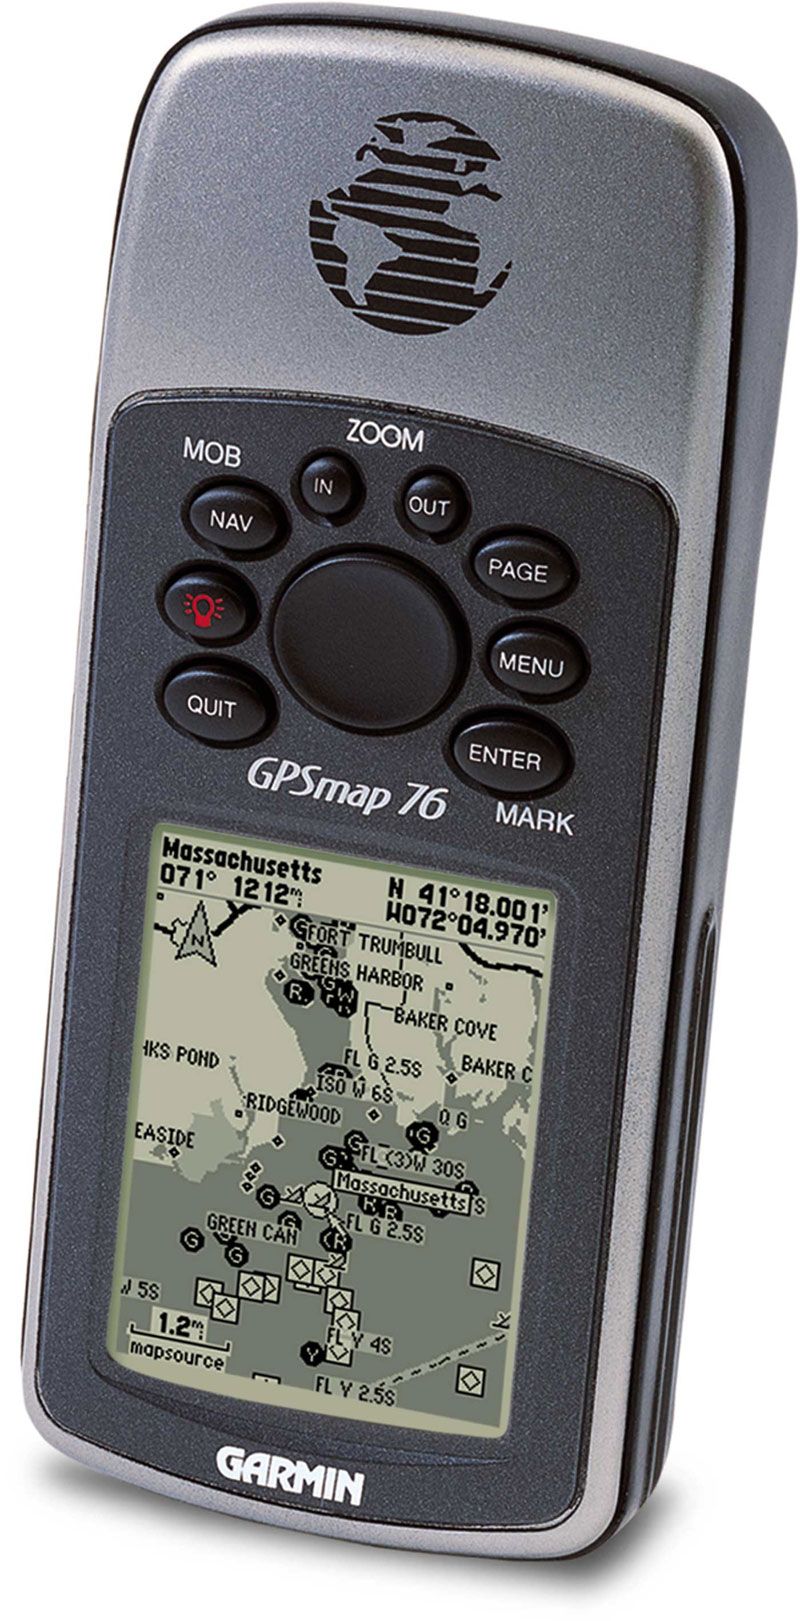 GPSMAP® 76